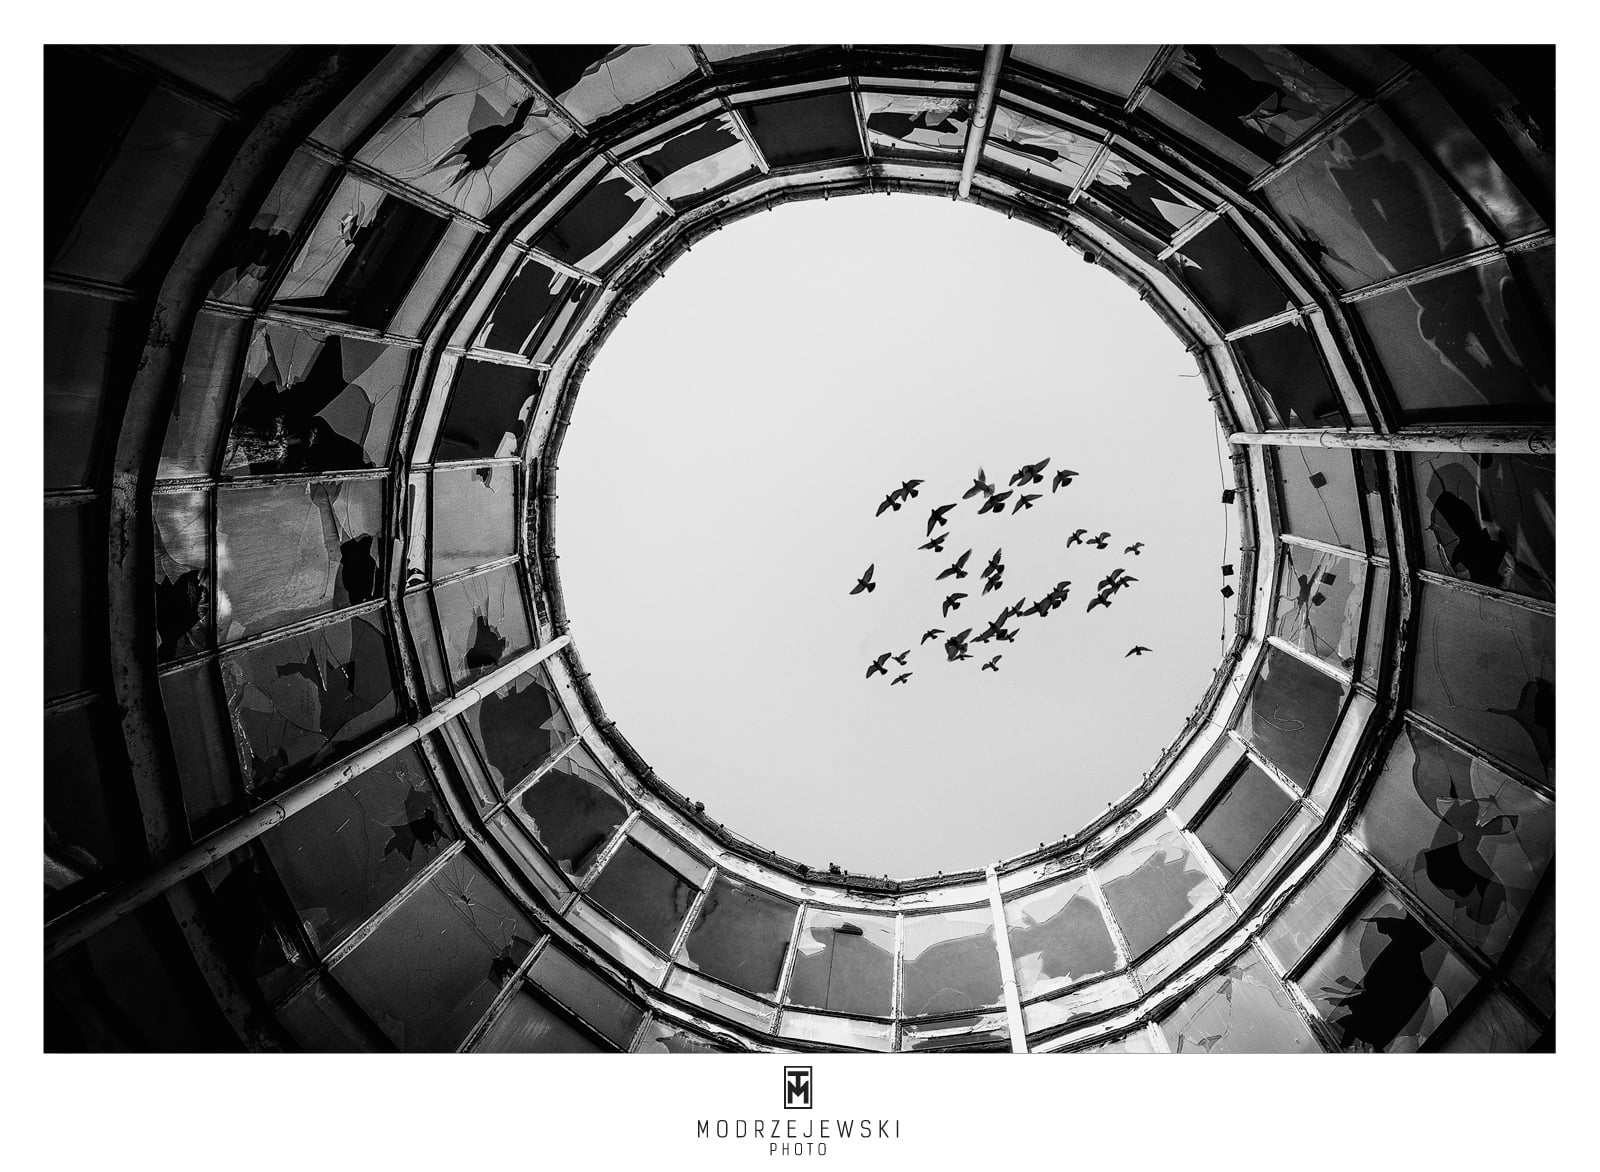 tomasz modrzejewski interfoto ptaki w okręgu czarno białe zdjęcie